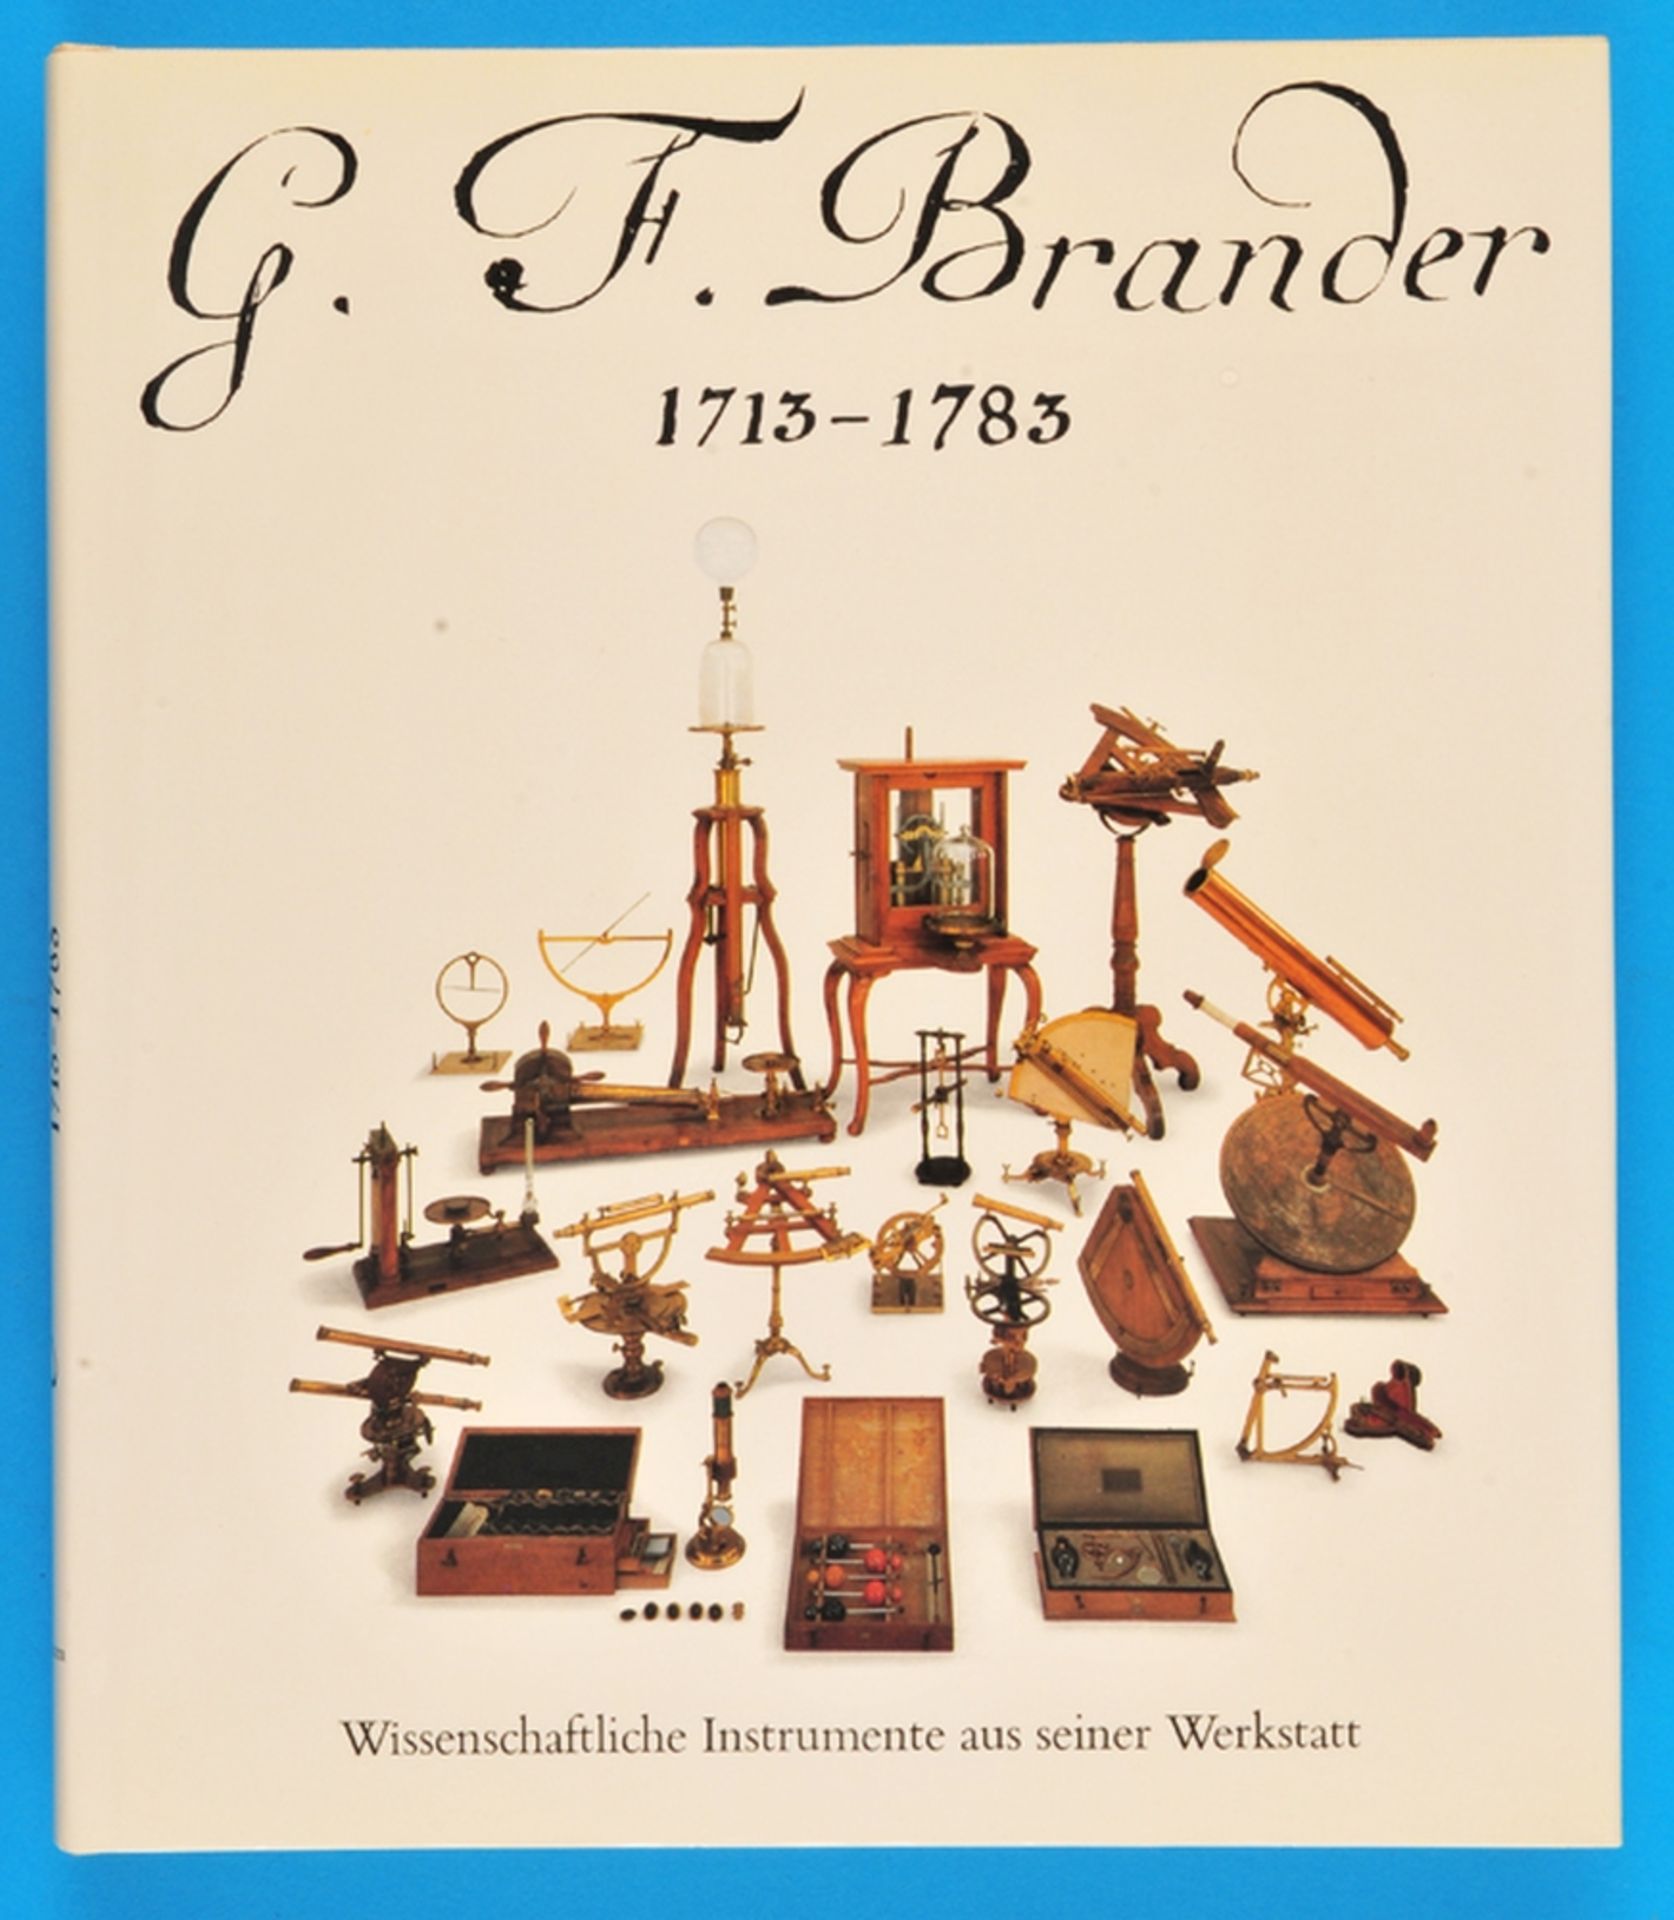 Deutsches Museum München, G.F.Brander 1713- 1783, Wissenschaftliche Instrumente aus seiner Werkstatt